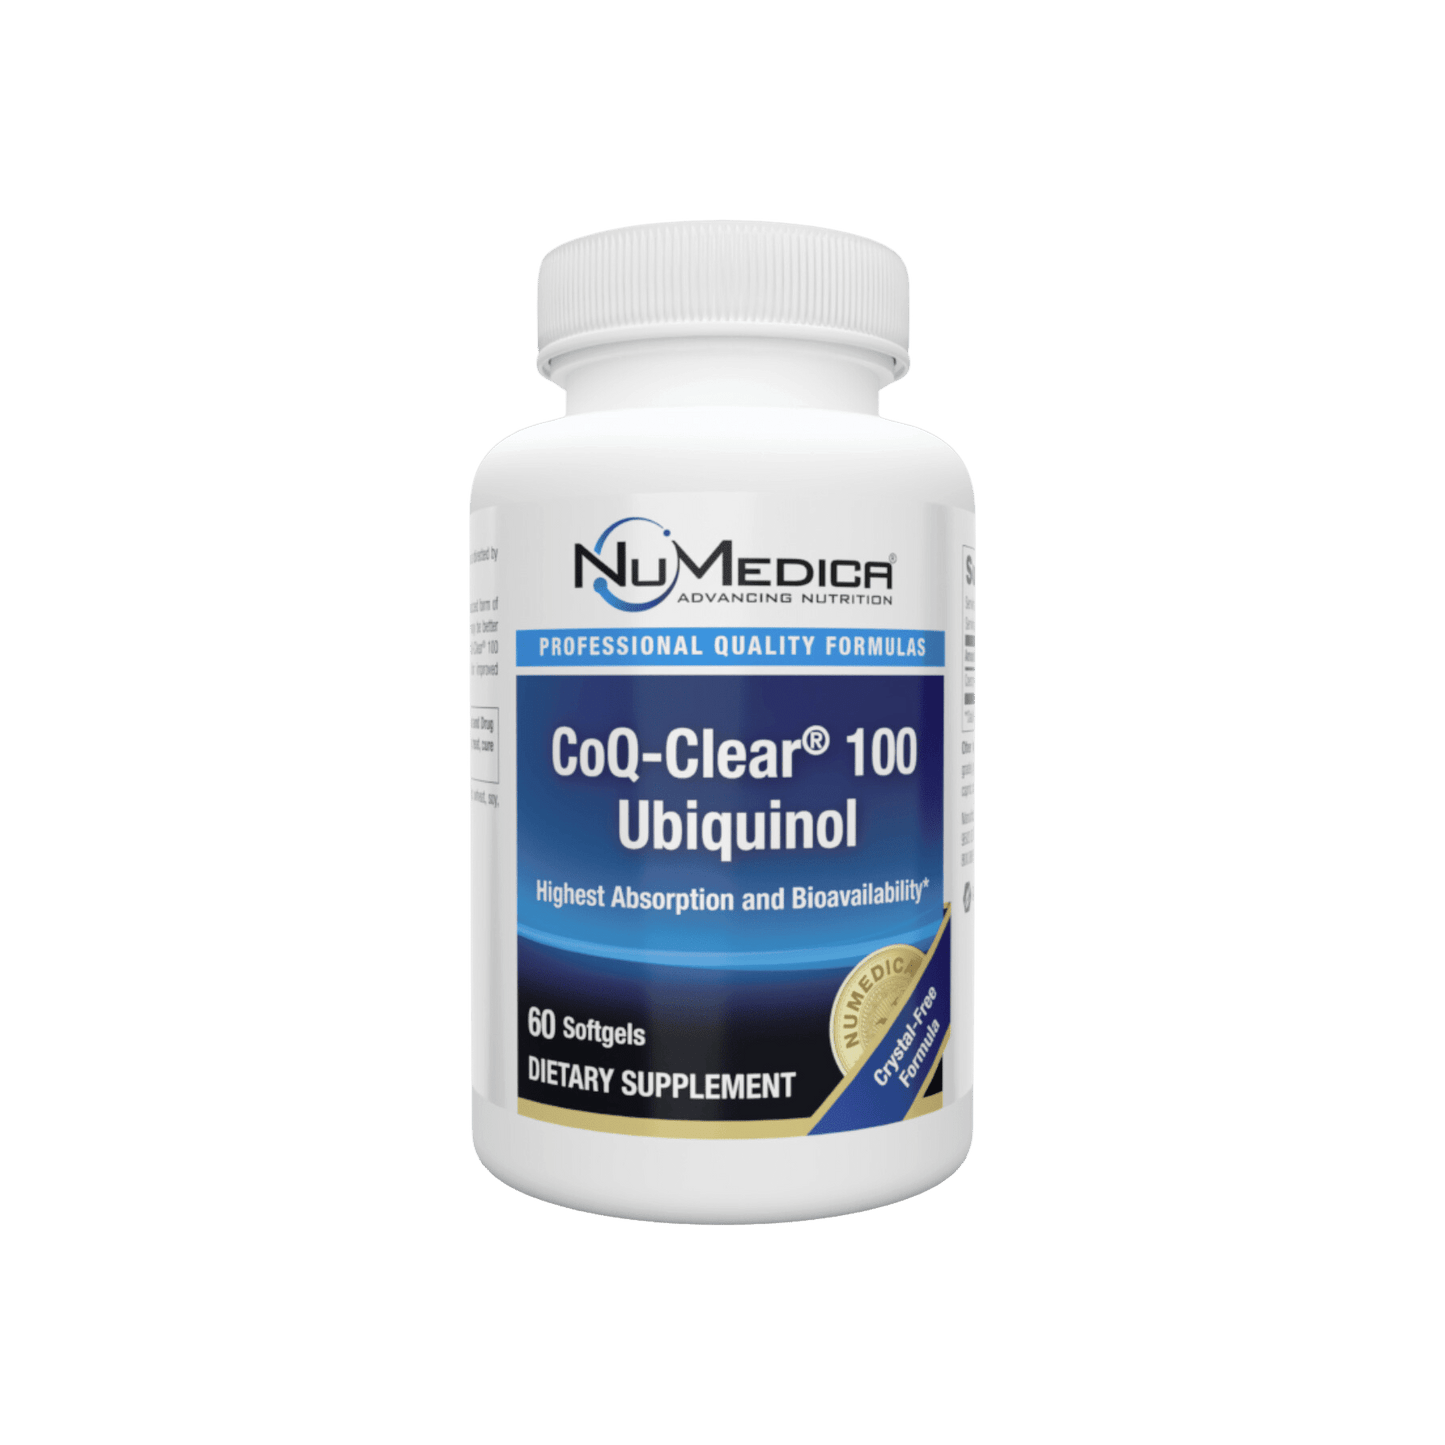 NuMedica CoQ-Clear 100 Ubiquinol Softgels